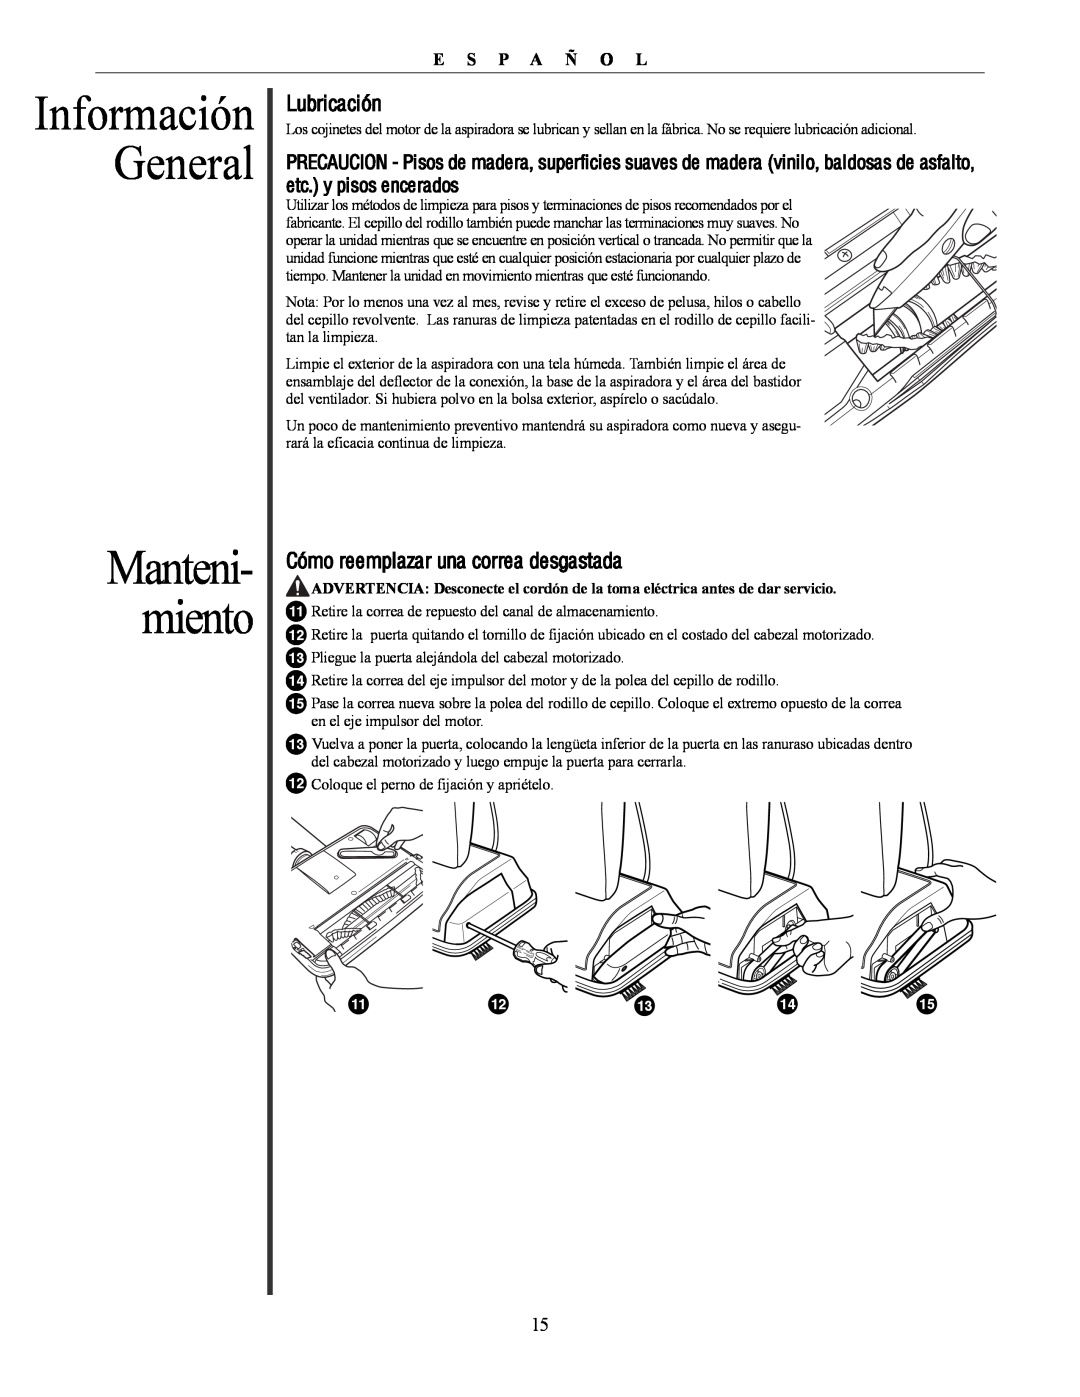 Oreck U4300 manual Manteni- miento, Información General, Lubricación, Cómo reemplazar una correa desgastada, E S P A ñ O L 